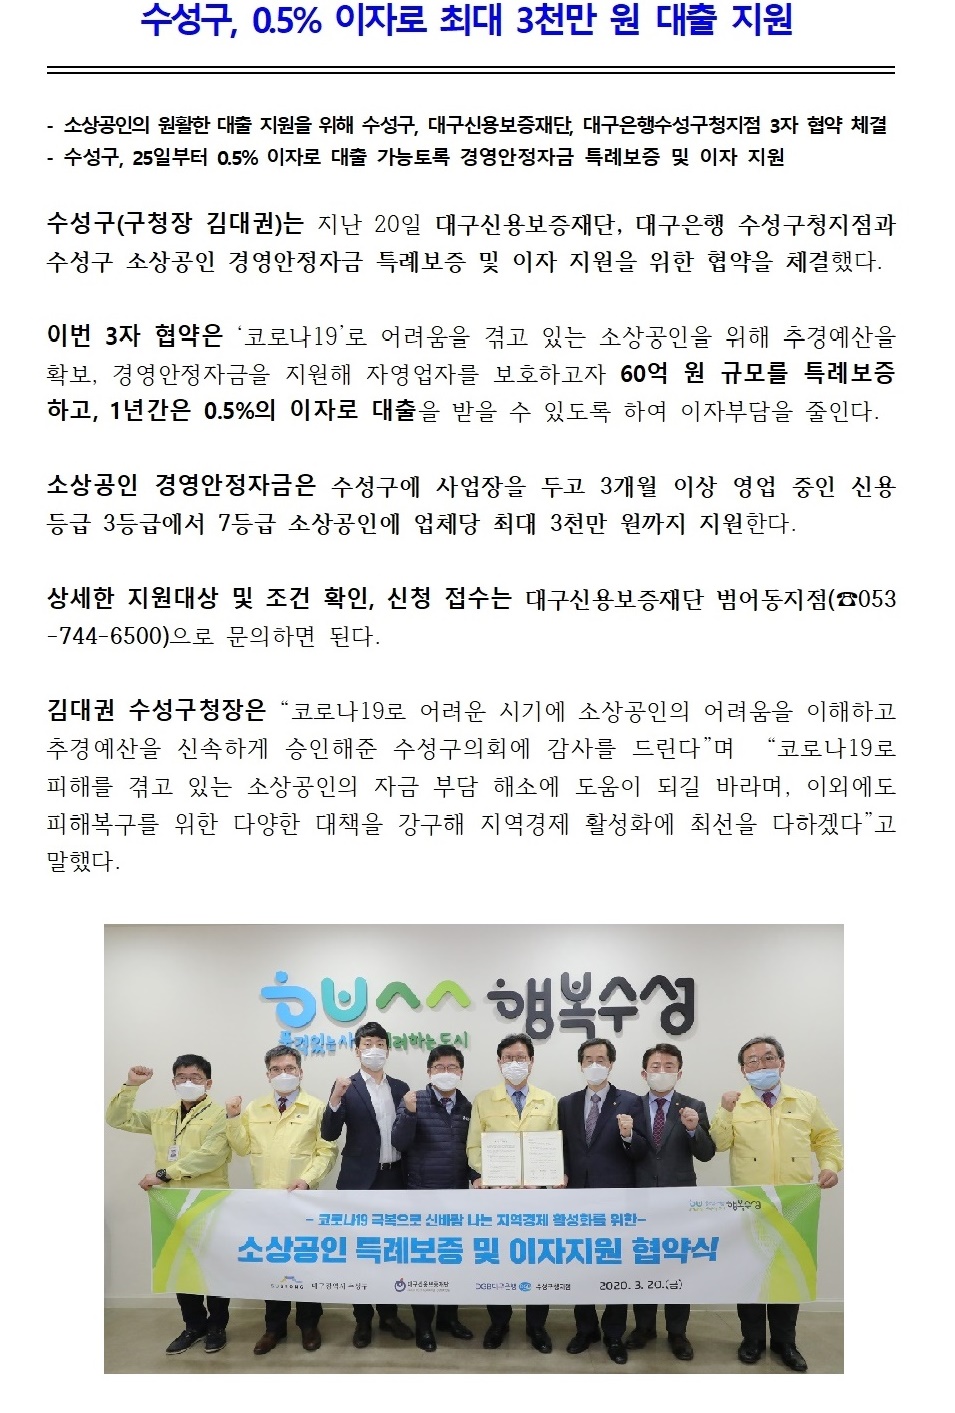 (보도자료) 소상공인 특례보증 및 이자지원 협약식 개최2